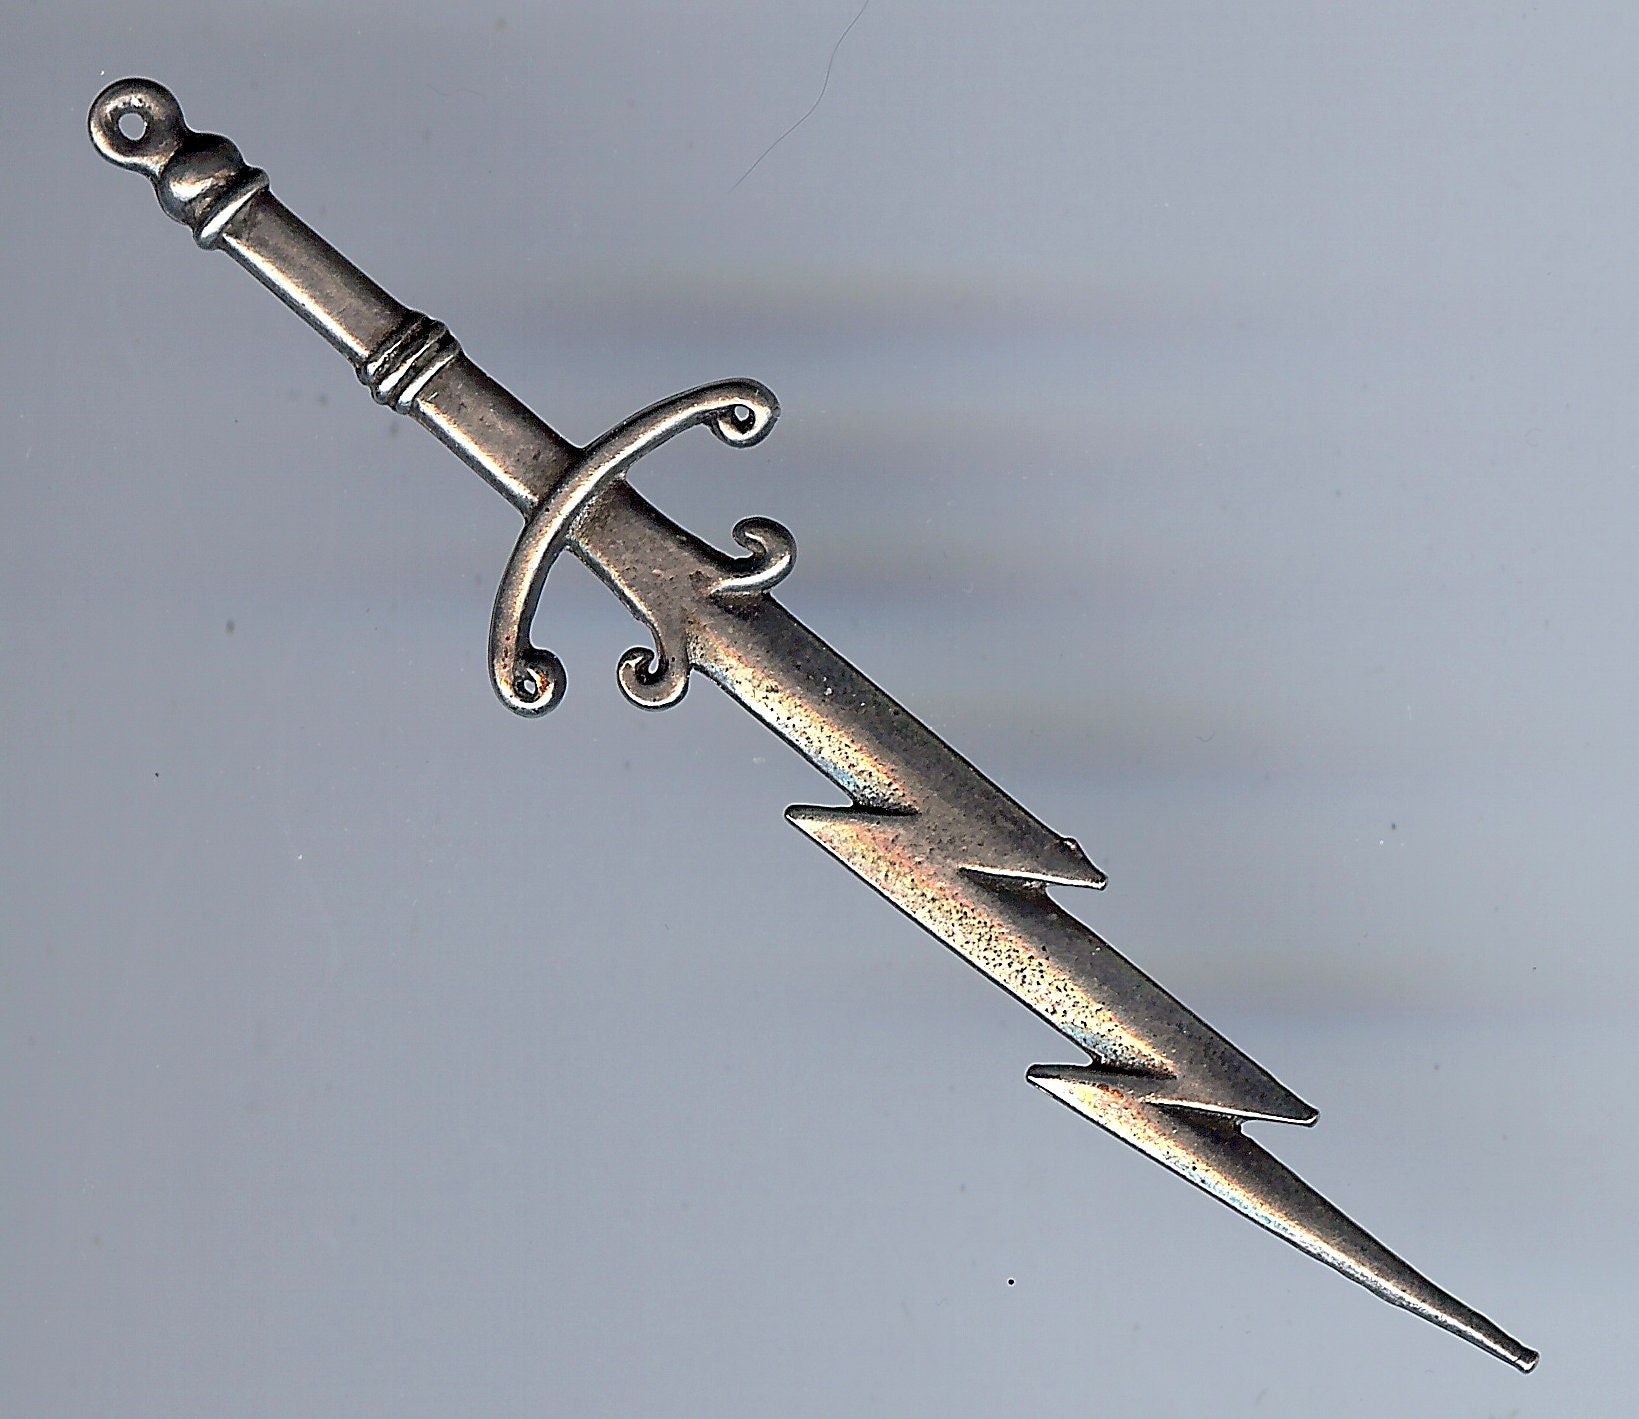 Sword of Zeus